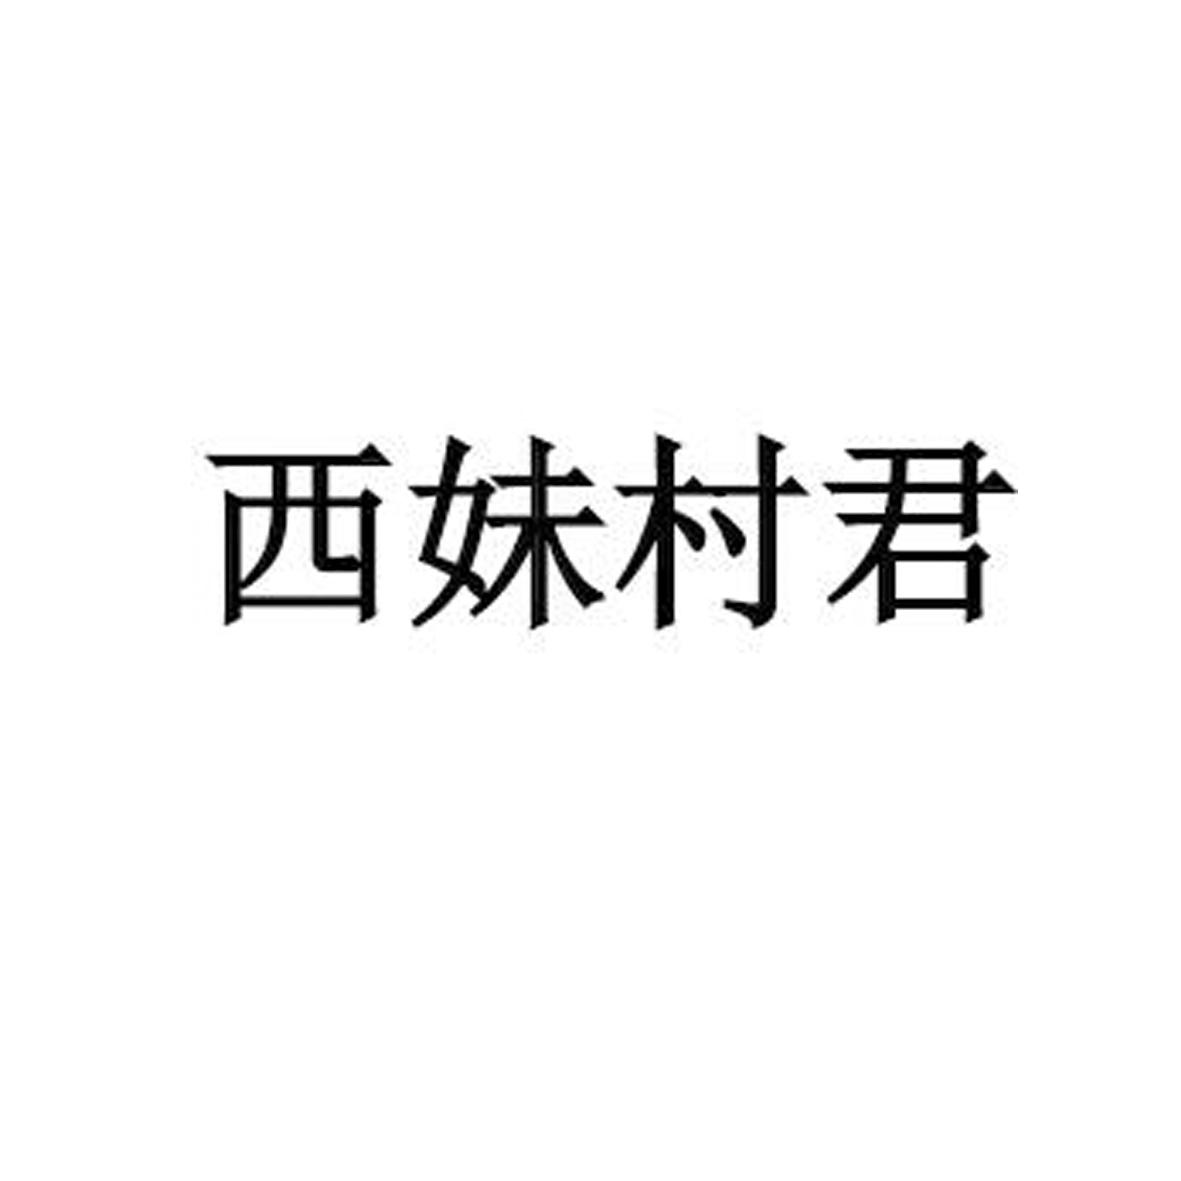 西妹村君logo